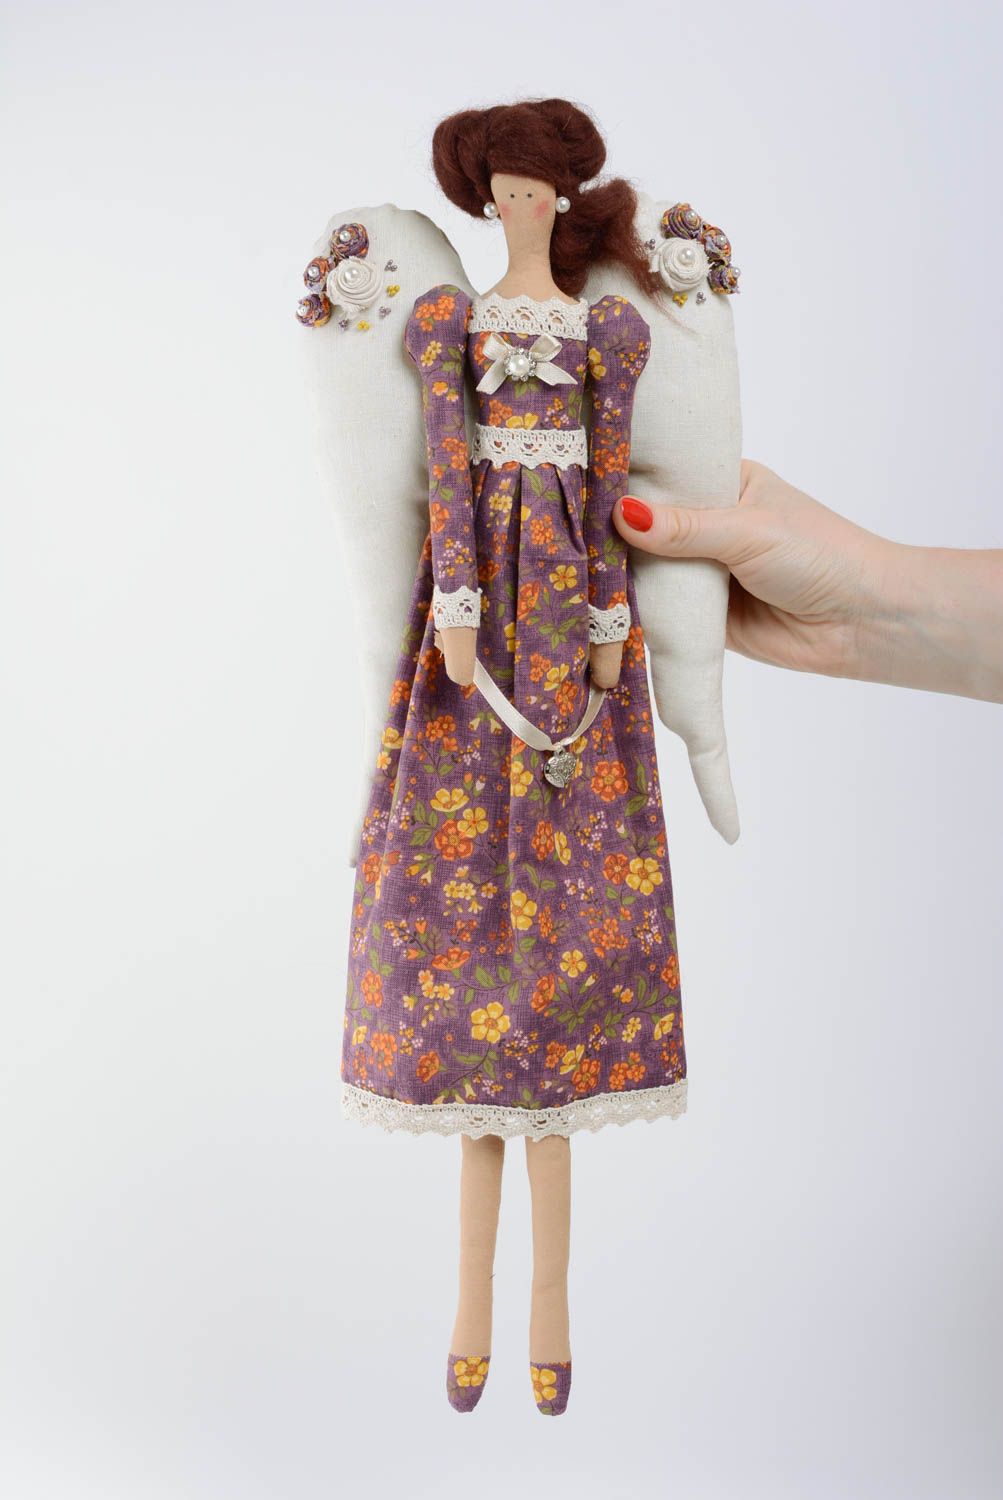 Тканевая игрушка из хлопка мягкая красивая детская ручной работы Ангел-девочка фото 4